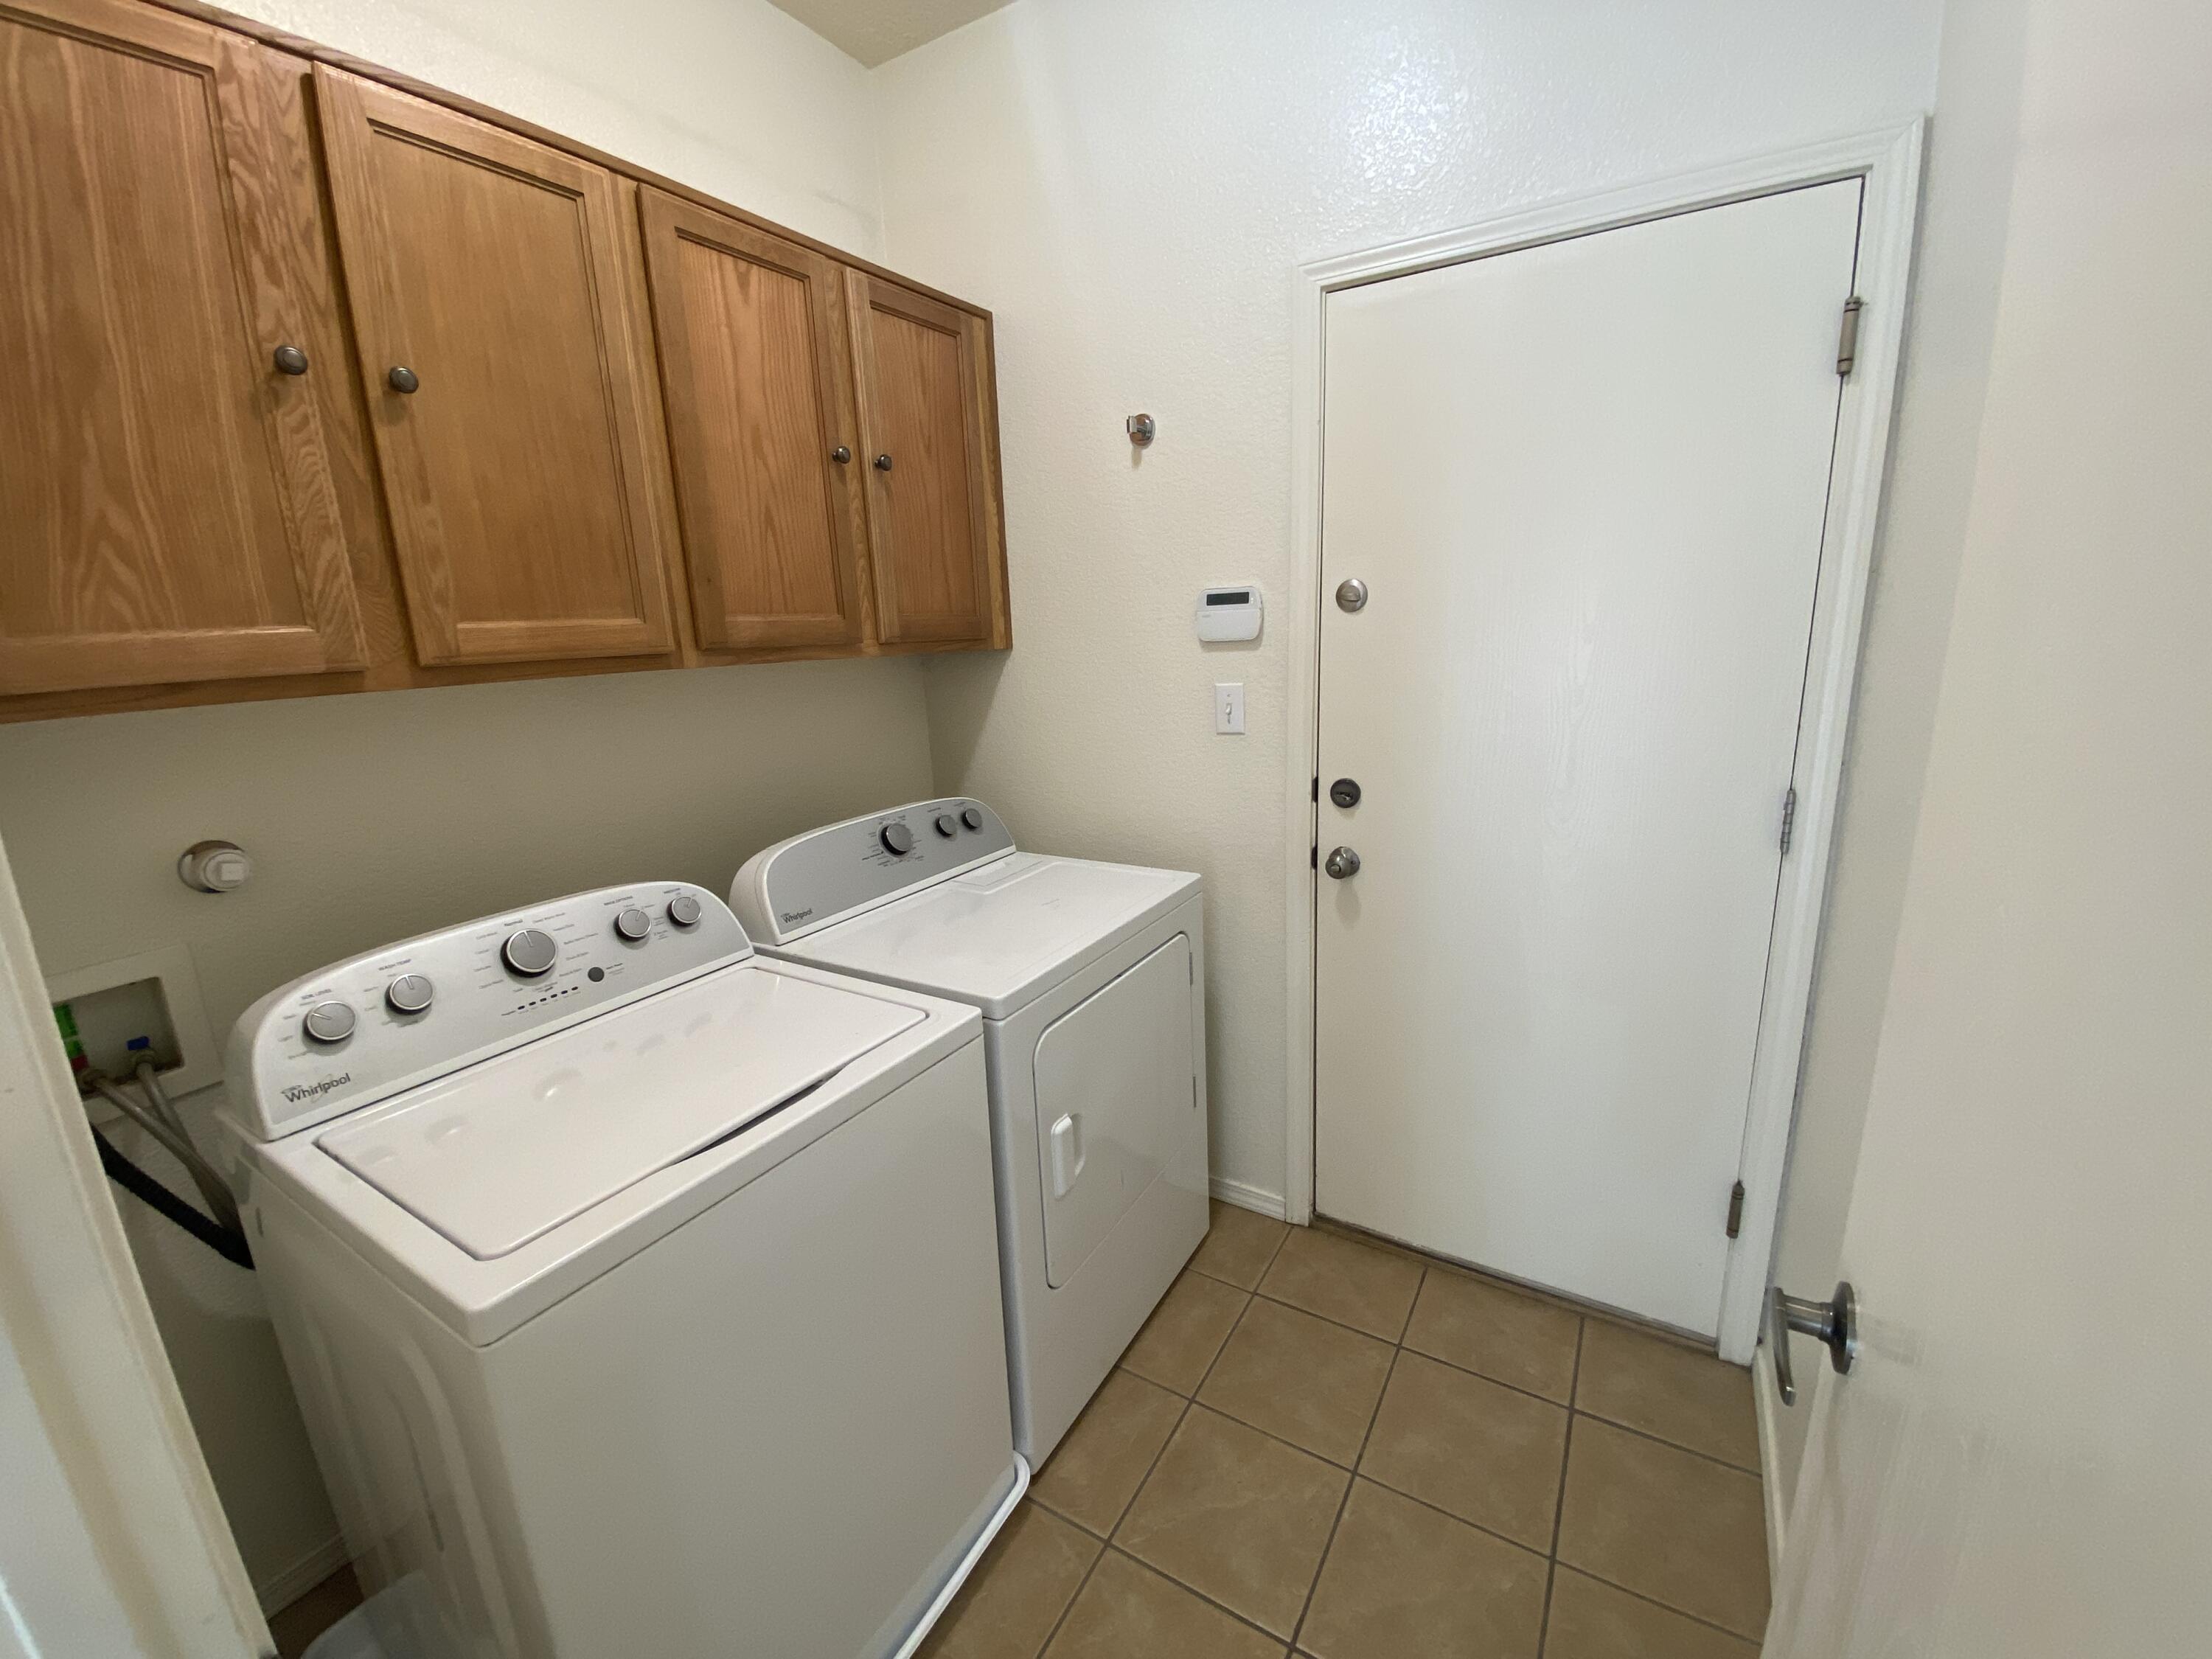 9812 Rio Corto Avenue SW, Albuquerque, New Mexico 87121, 4 Bedrooms Bedrooms, ,3 BathroomsBathrooms,Residential,For Sale,9812 Rio Corto Avenue SW,1062057